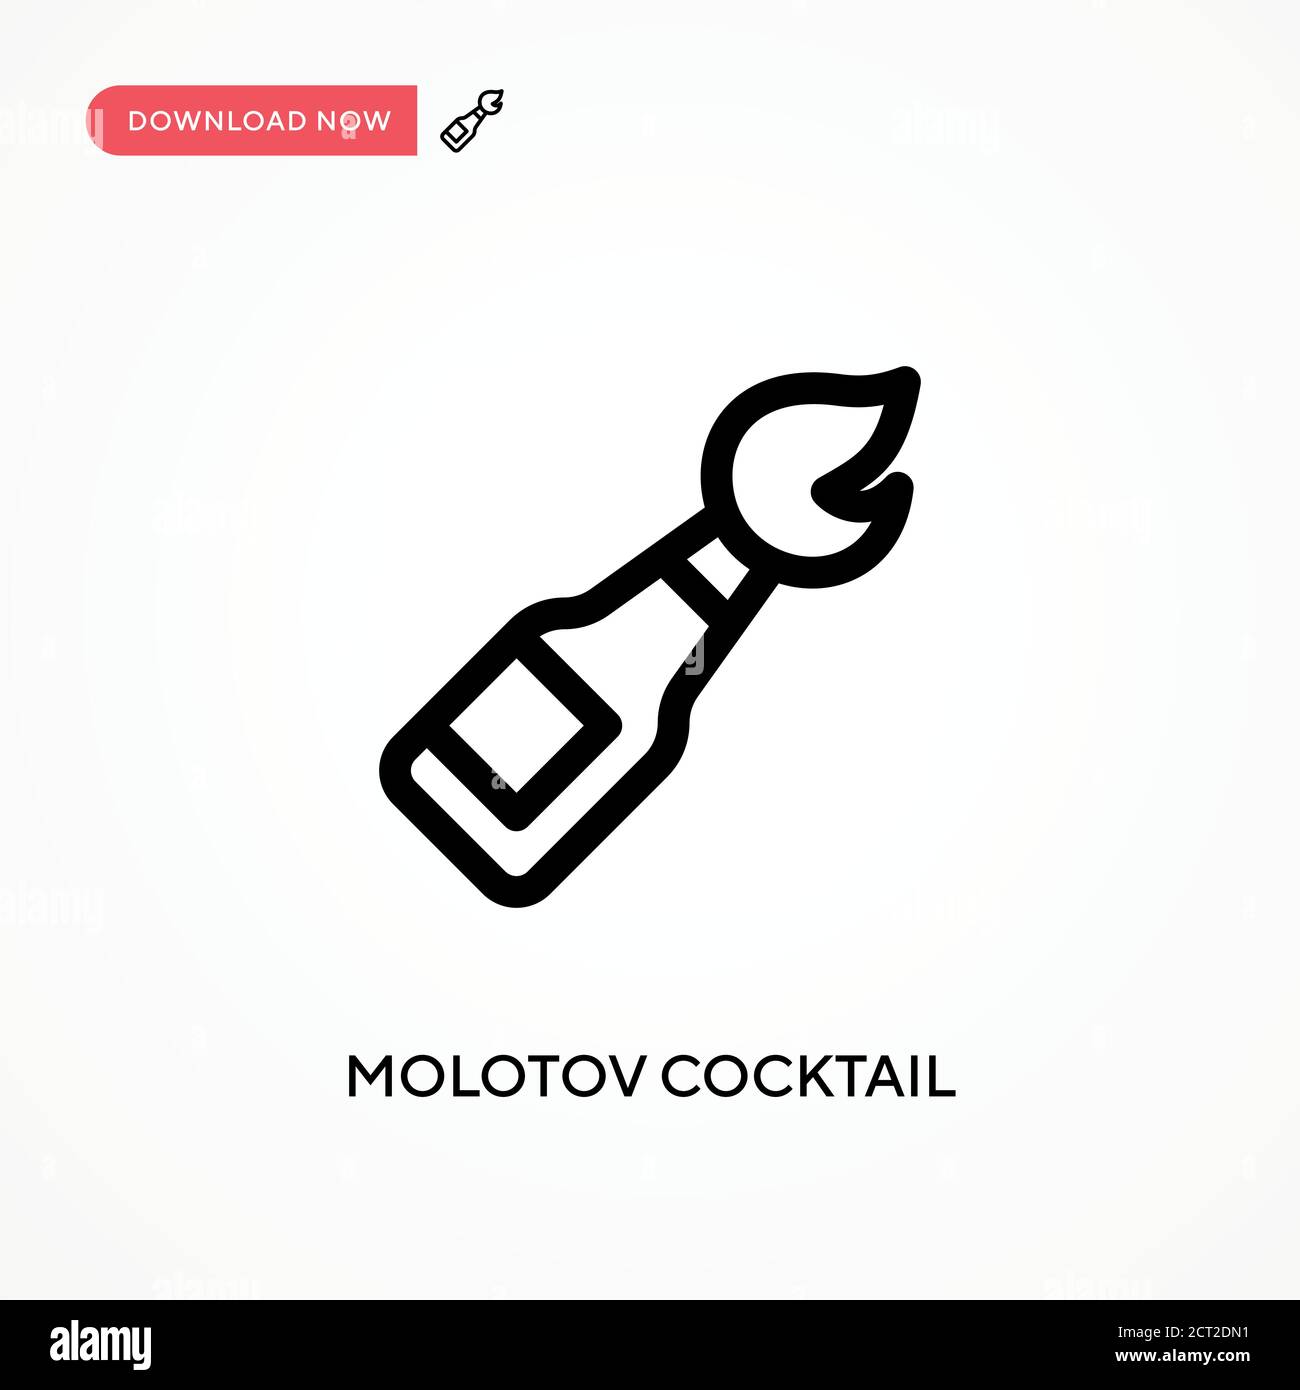 Icône vecteur simple cocktail Molotov. Illustration moderne et simple à vecteur plat pour site Web ou application mobile Illustration de Vecteur